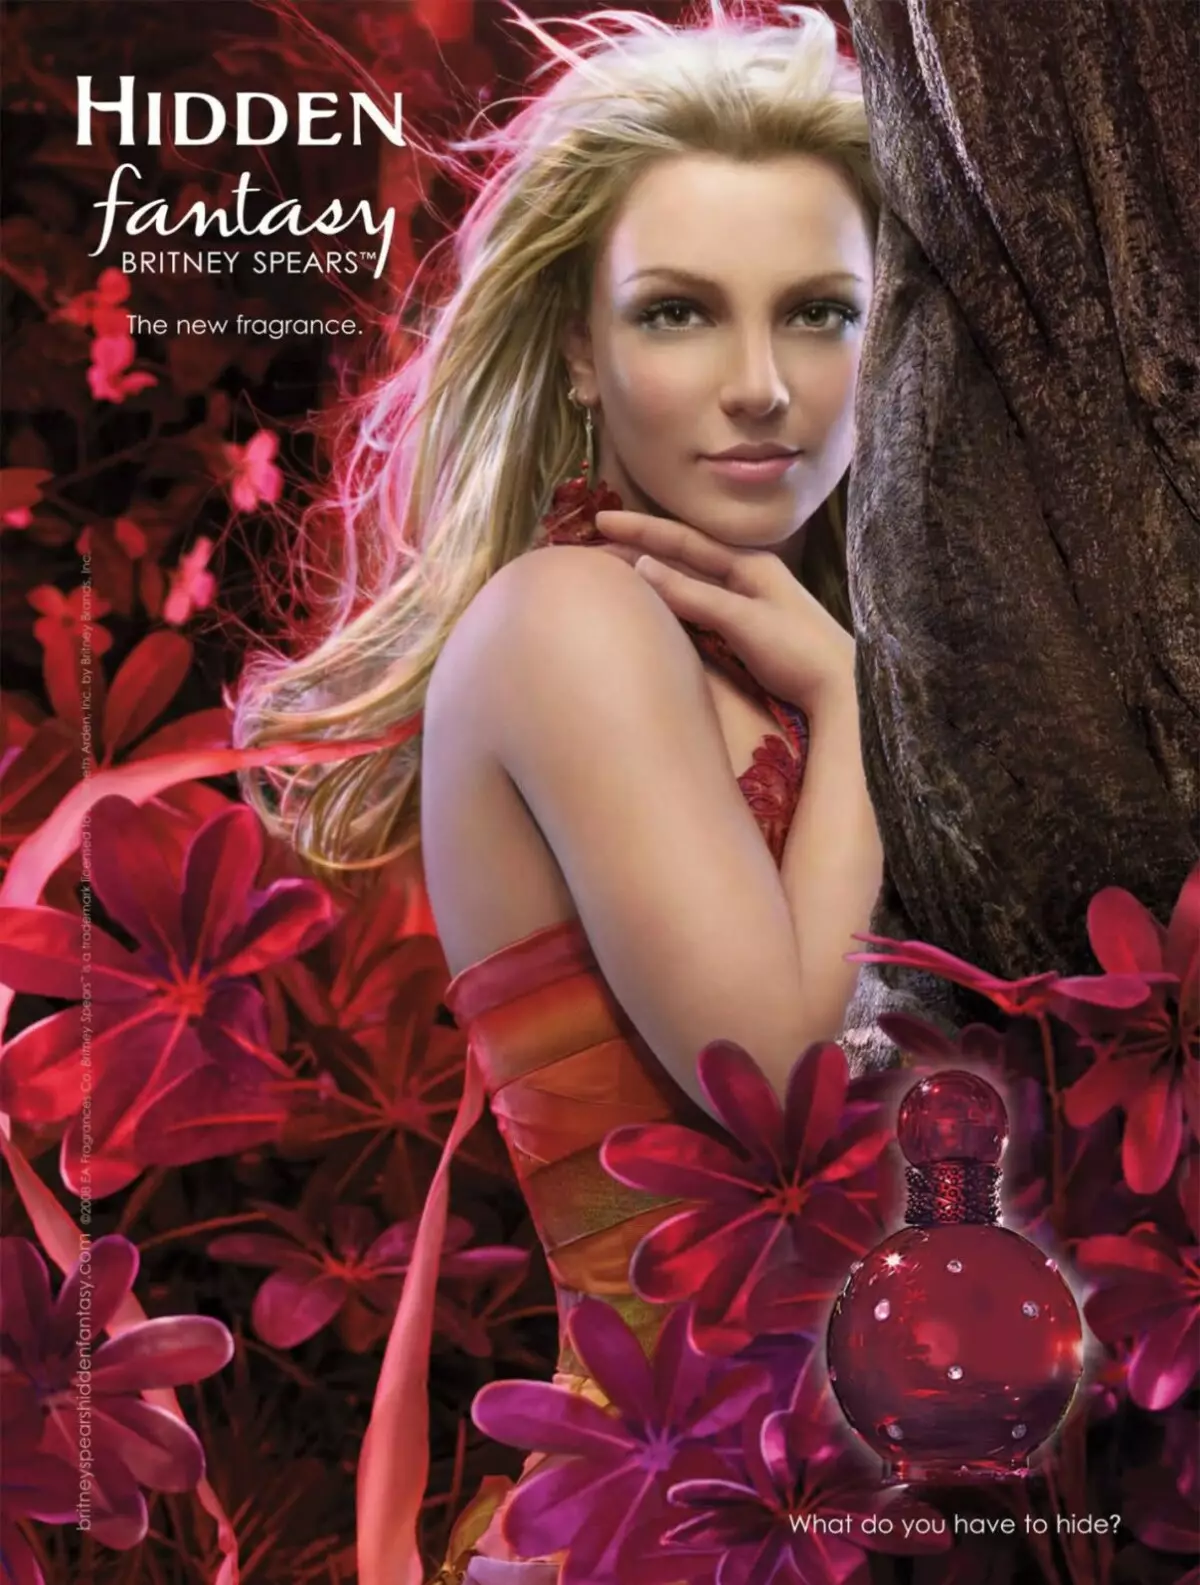 Perzuy Britney Spears: Parfum en húskewetter, fantasy, middernacht fantasy en oare smaken út it merk 25313_8